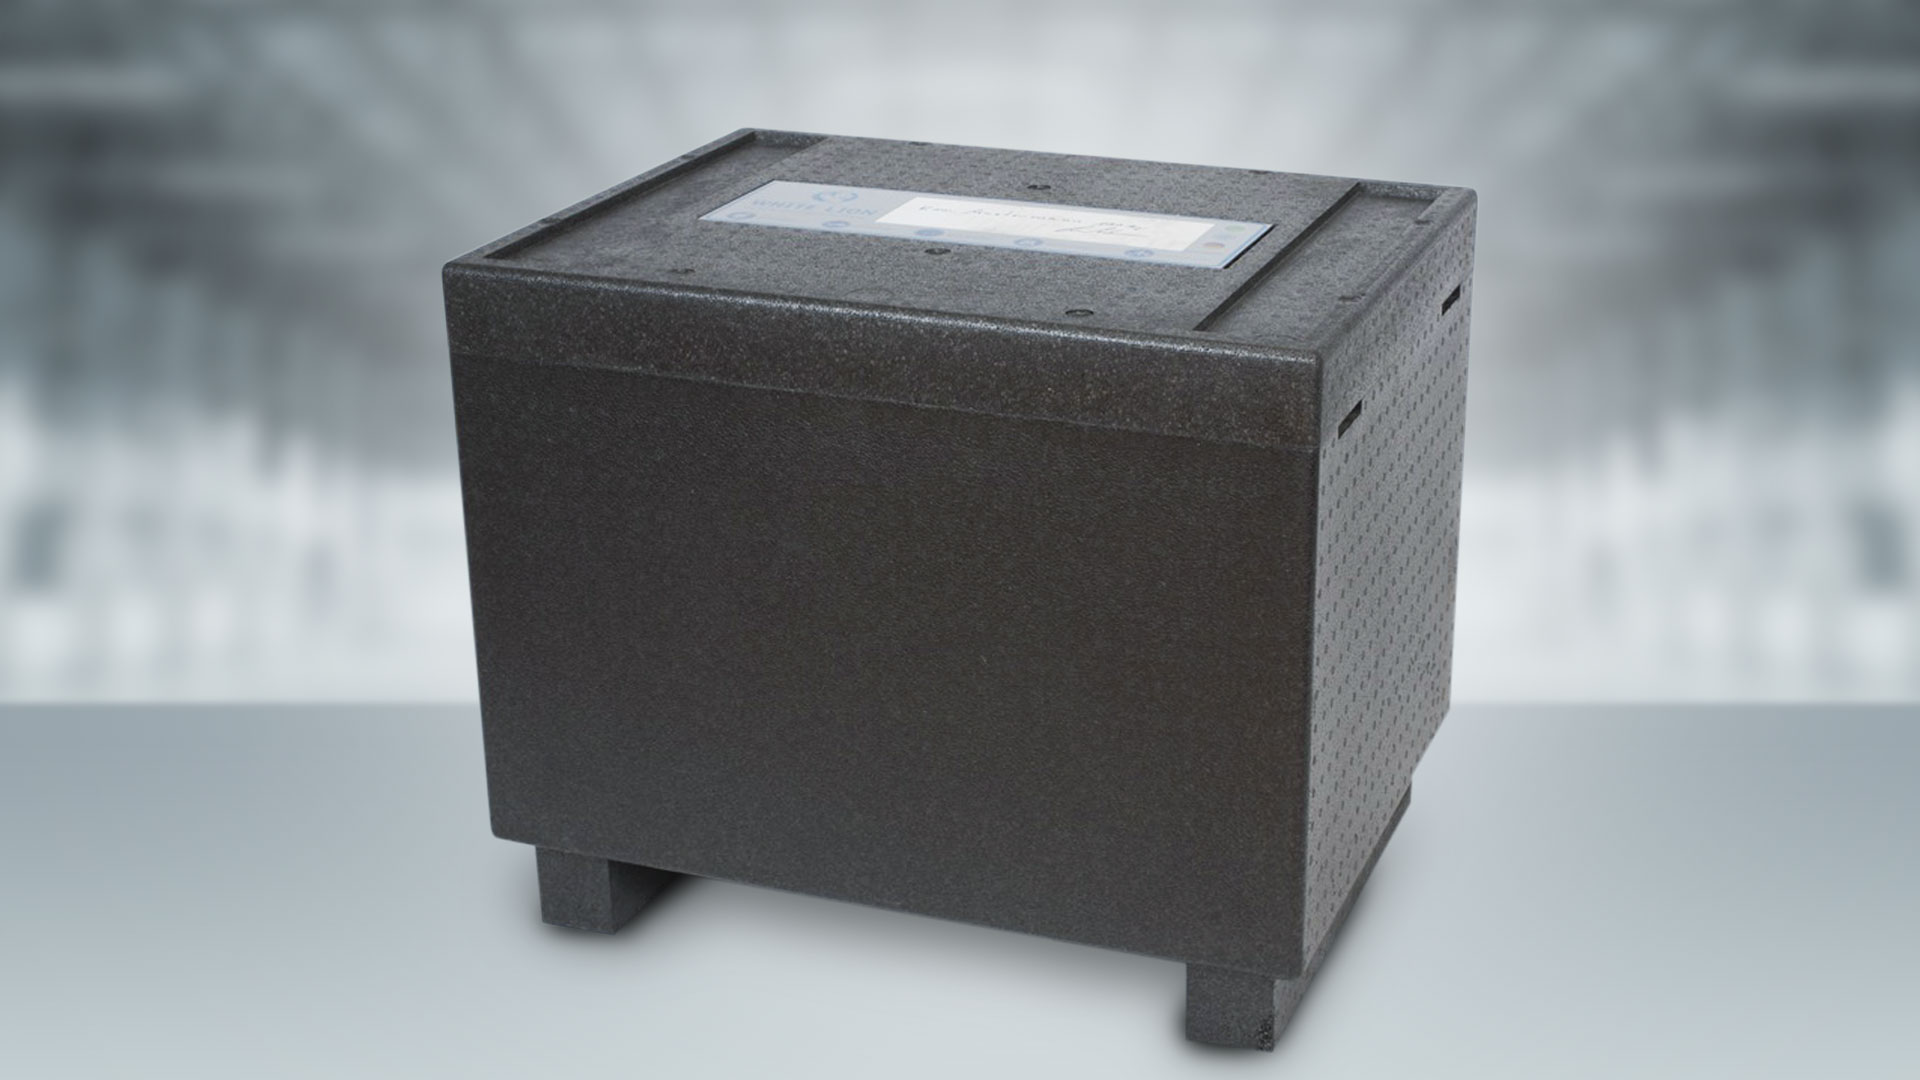 Контейнер для транспортировки сухого льда Black Box 100 является самым лёгким контейнером в нашем ассортименте. 